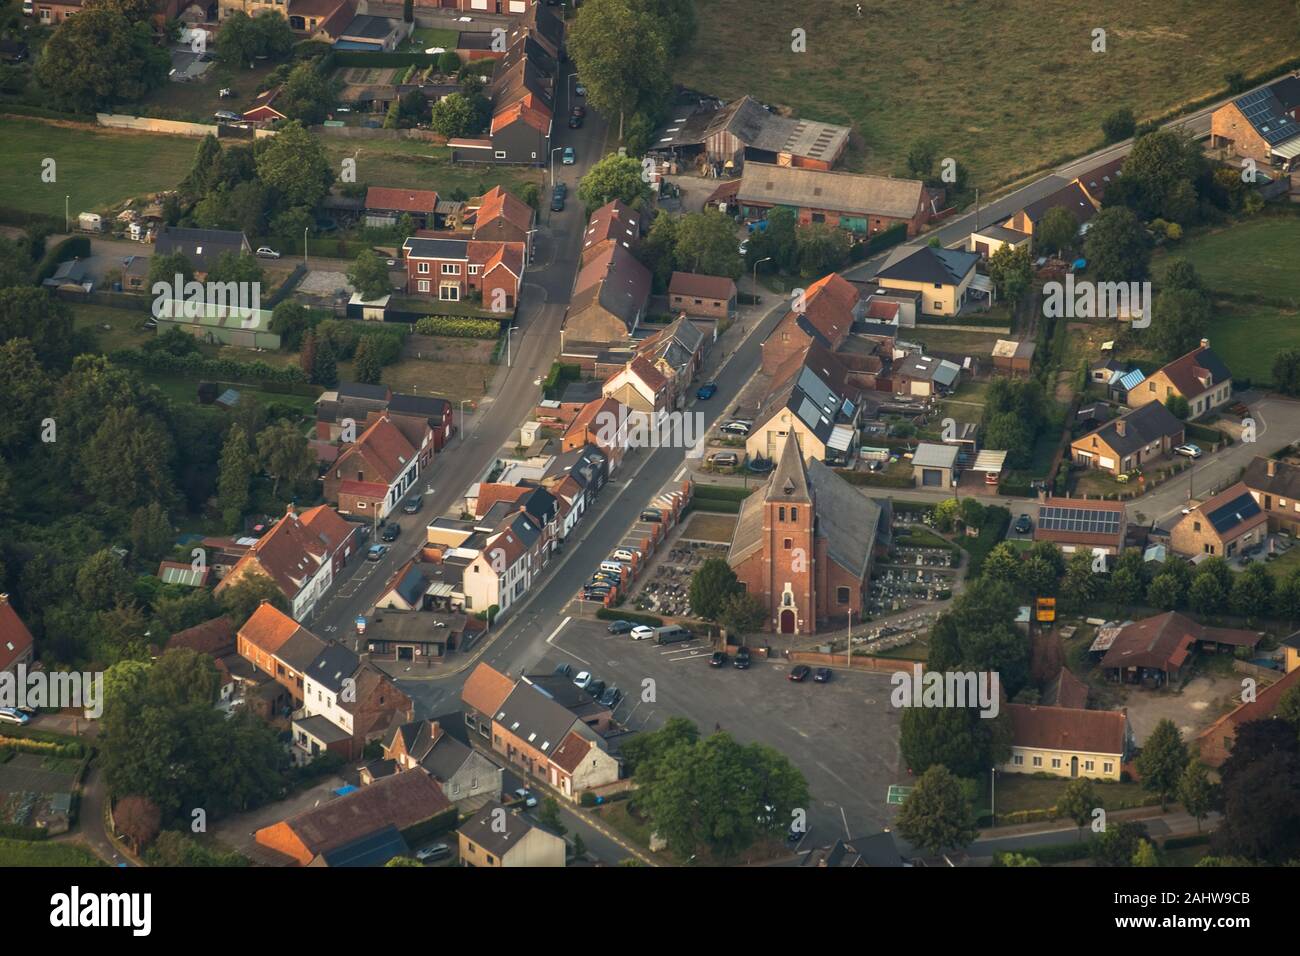 Vol en montgolfière sur la Flandre orientale offre une vue imprenable. Ici, vous voyez le centre de Overslag, un petit village. L'église remonte au 18ème siècle. Banque D'Images